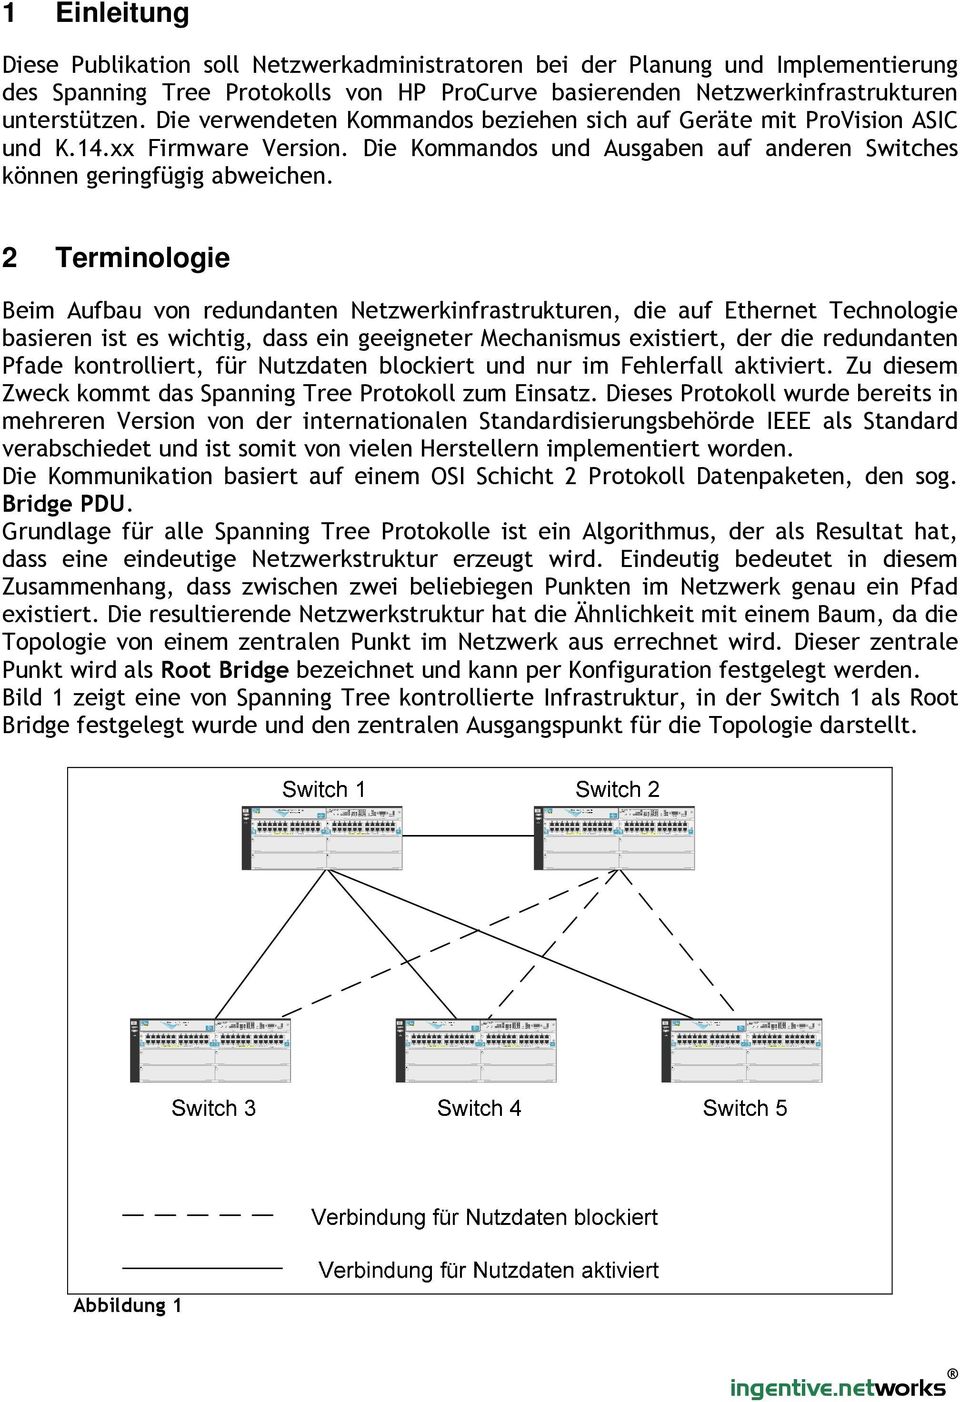 2 Terminologie Beim Aufbau von redundanten Netzwerkinfrastrukturen, die auf Ethernet Technologie basieren ist es wichtig, dass ein geeigneter Mechanismus existiert, der die redundanten Pfade